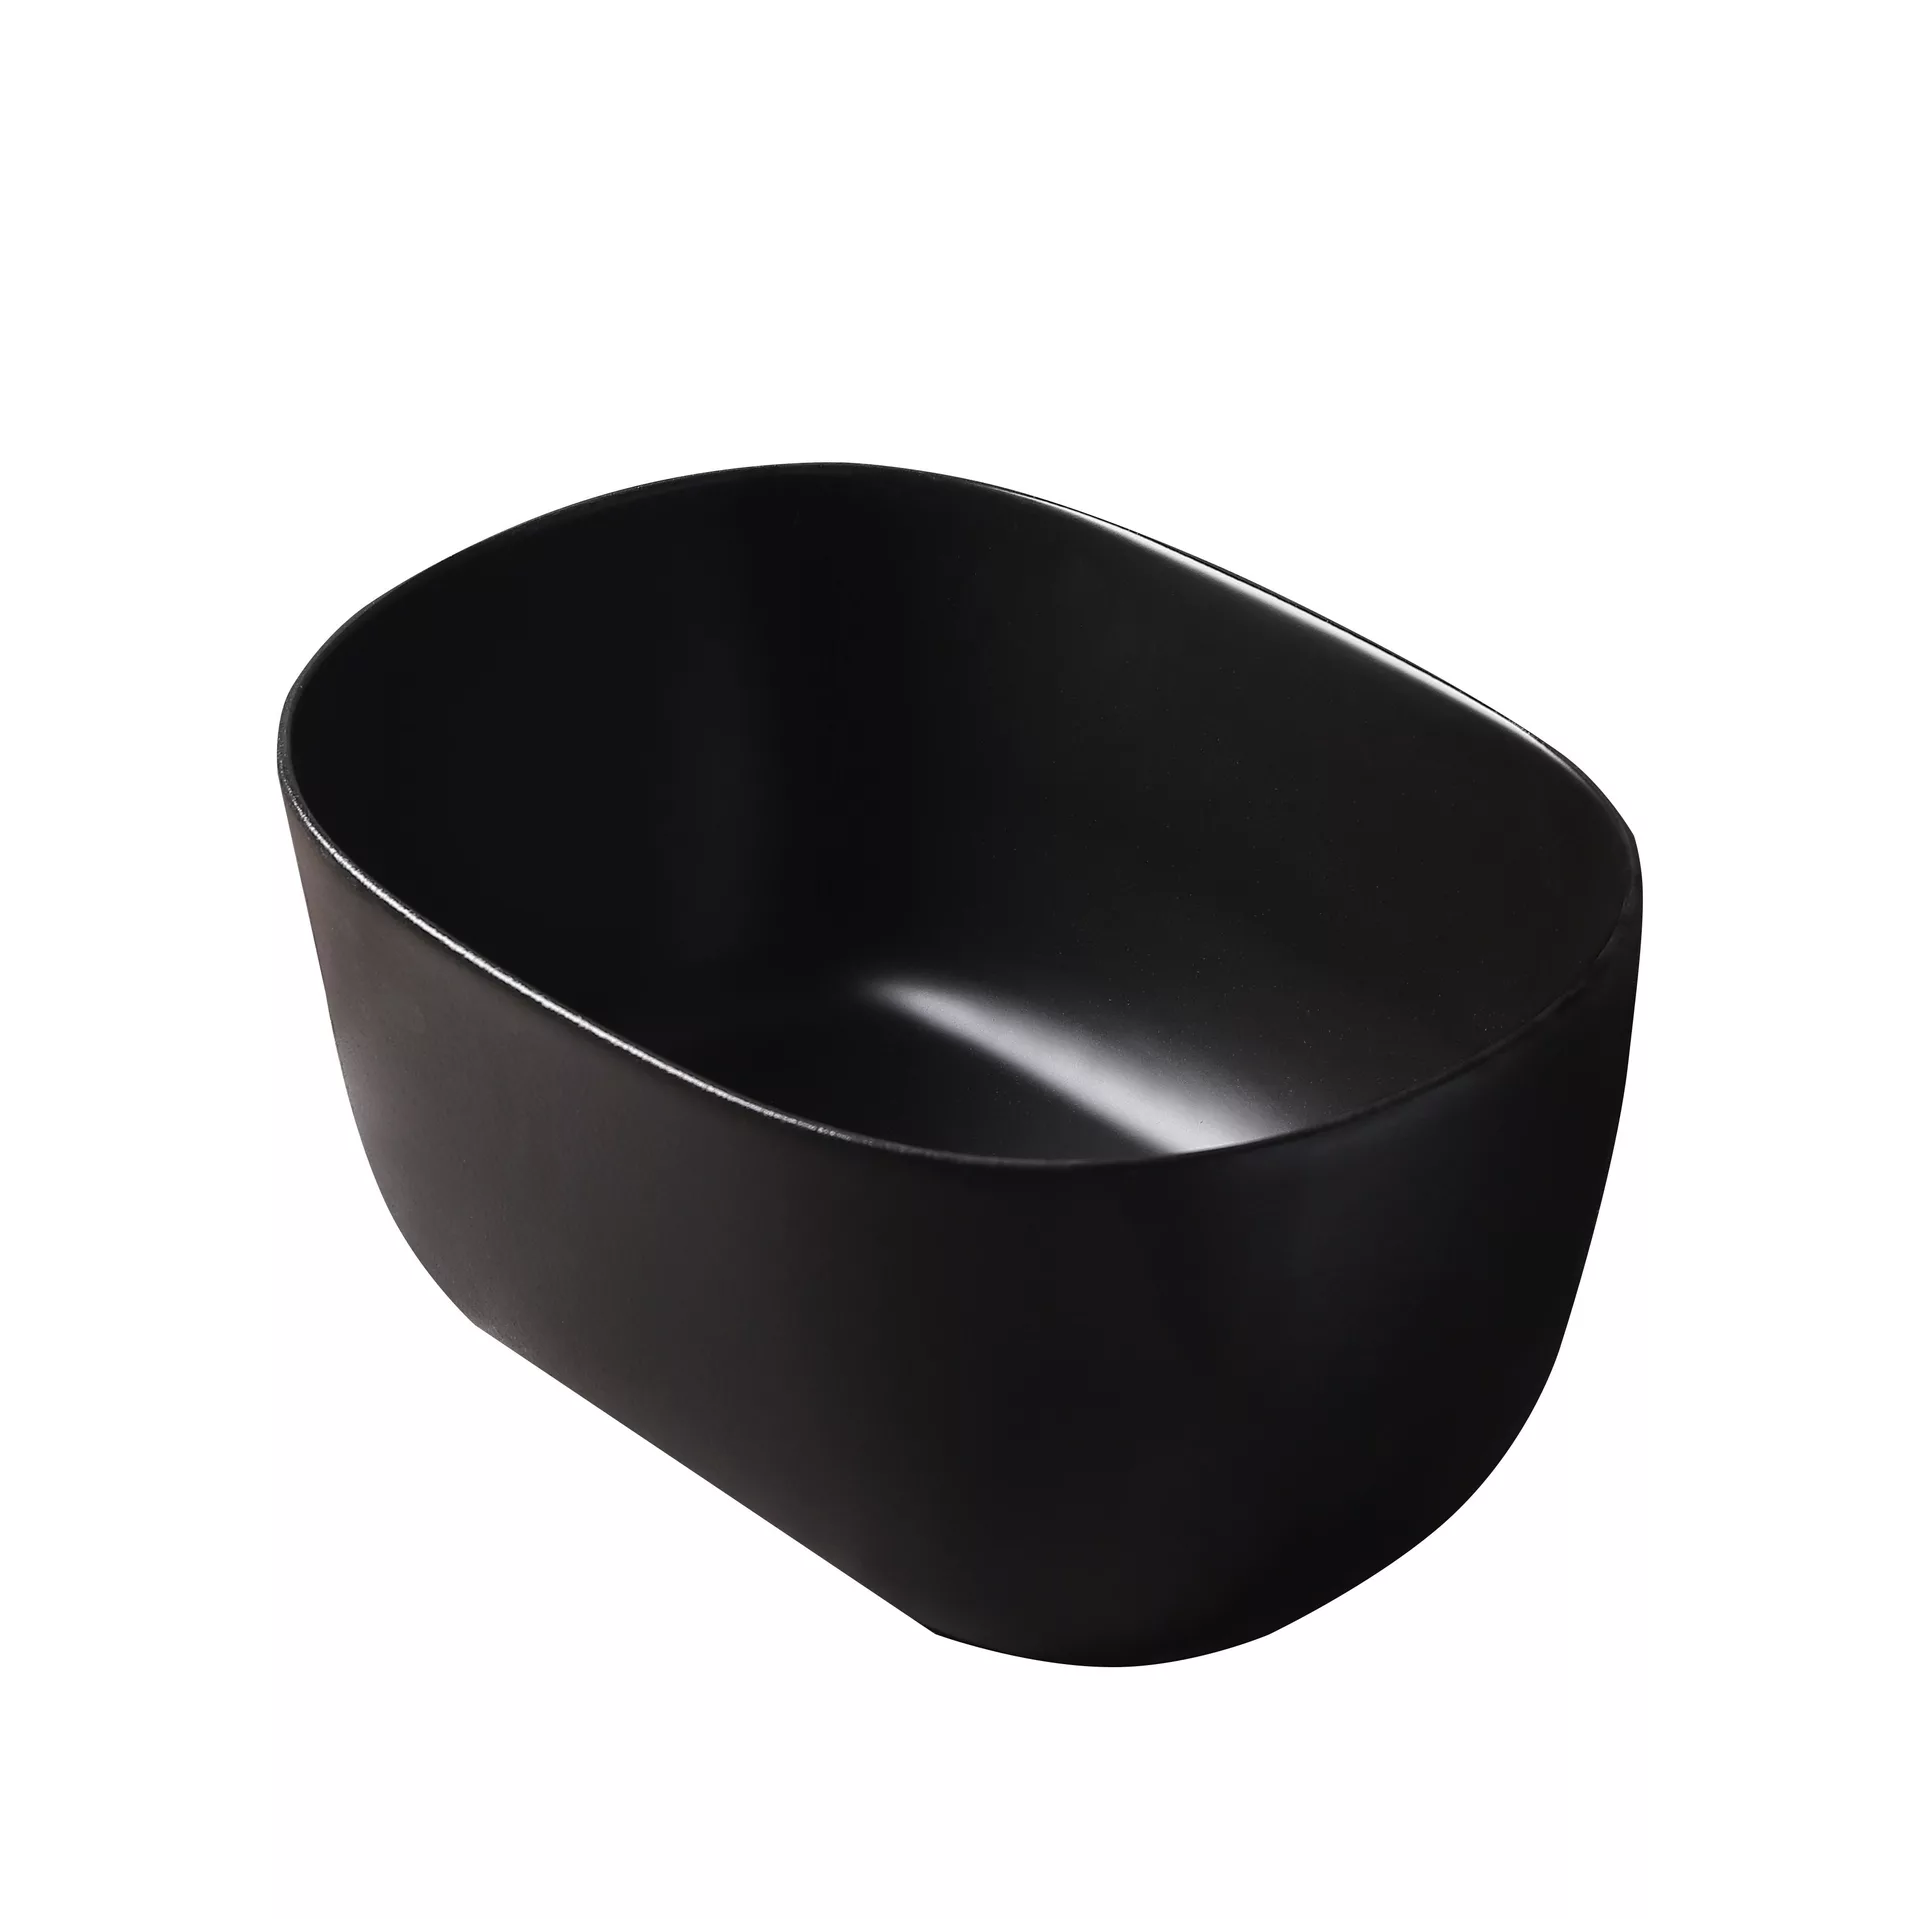 Накладная черная раковина для ванной GiD N9302bg овальная керамческая сковорода 24х14 см на подставке чугун дерево овальная черная бык authentic